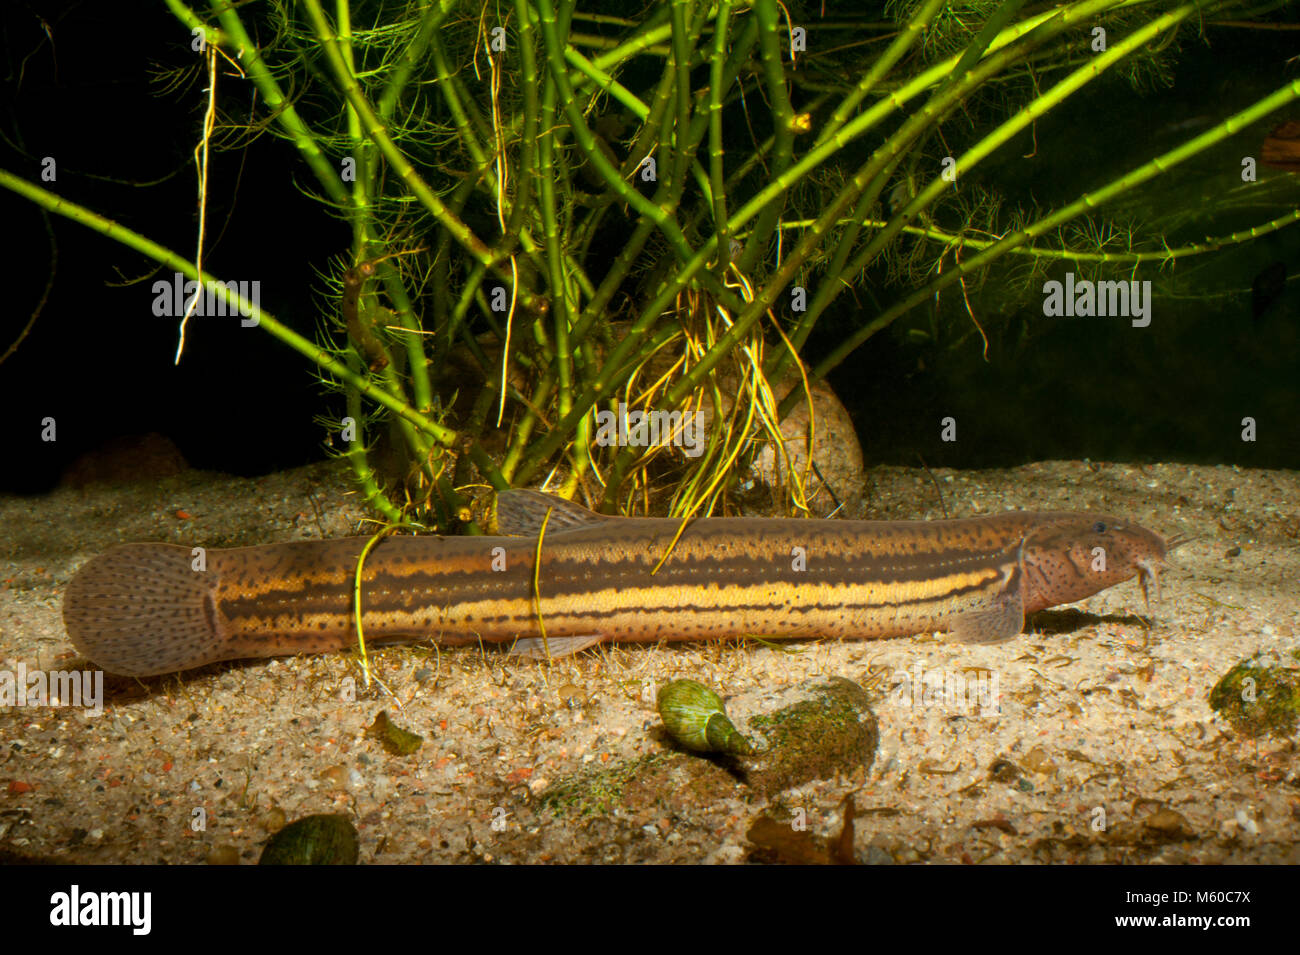 European Weatherfish (Misgurnus fossilis). Adult on the bottom of a pond. Germany Stock Photo